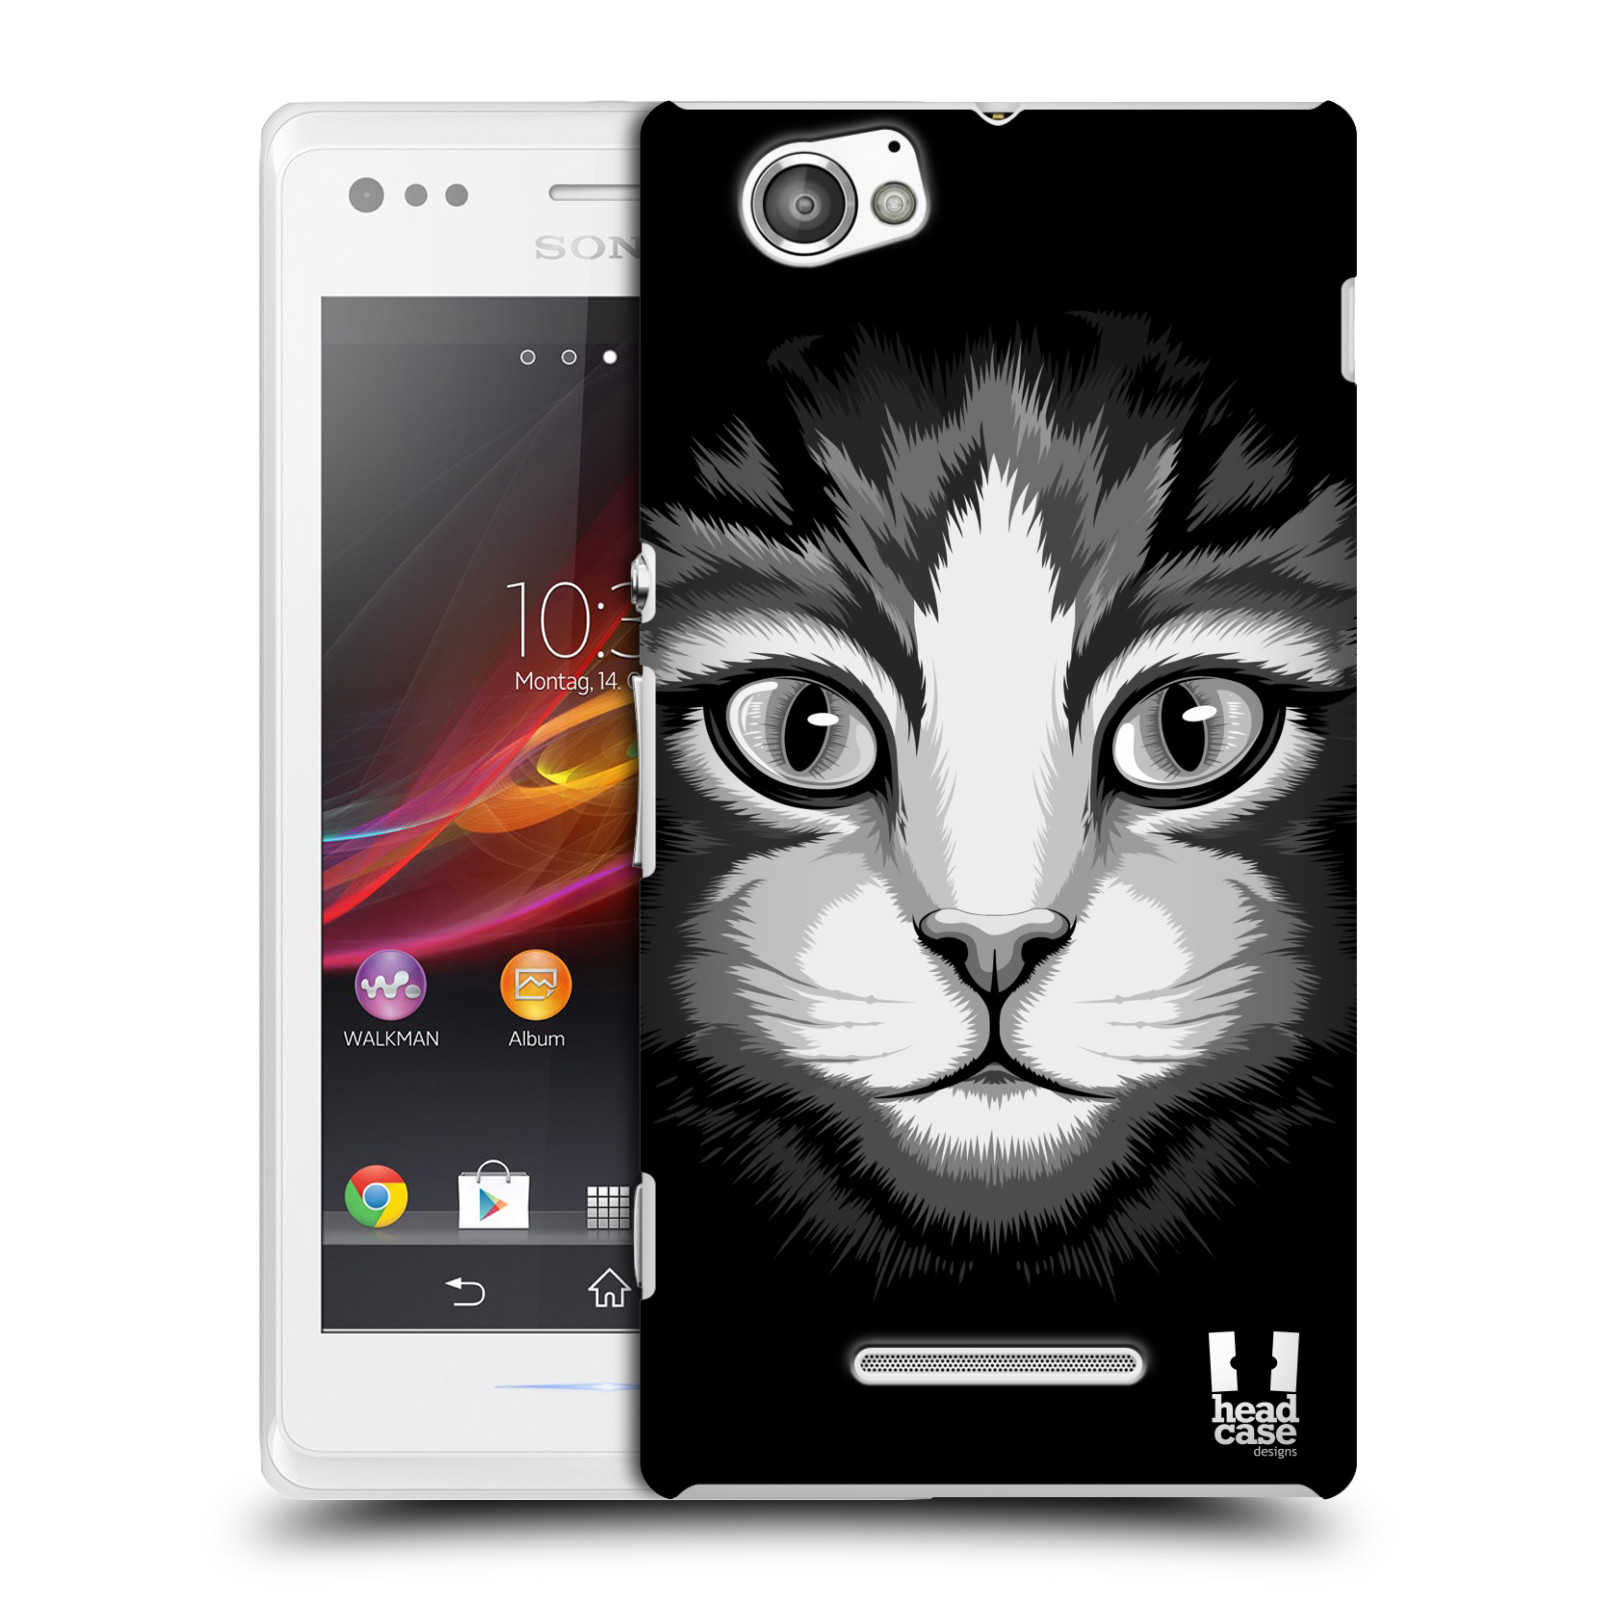 HEAD CASE plastový obal na mobil Sony Xperia M vzor Zvíře kreslená tvář 2 kočička